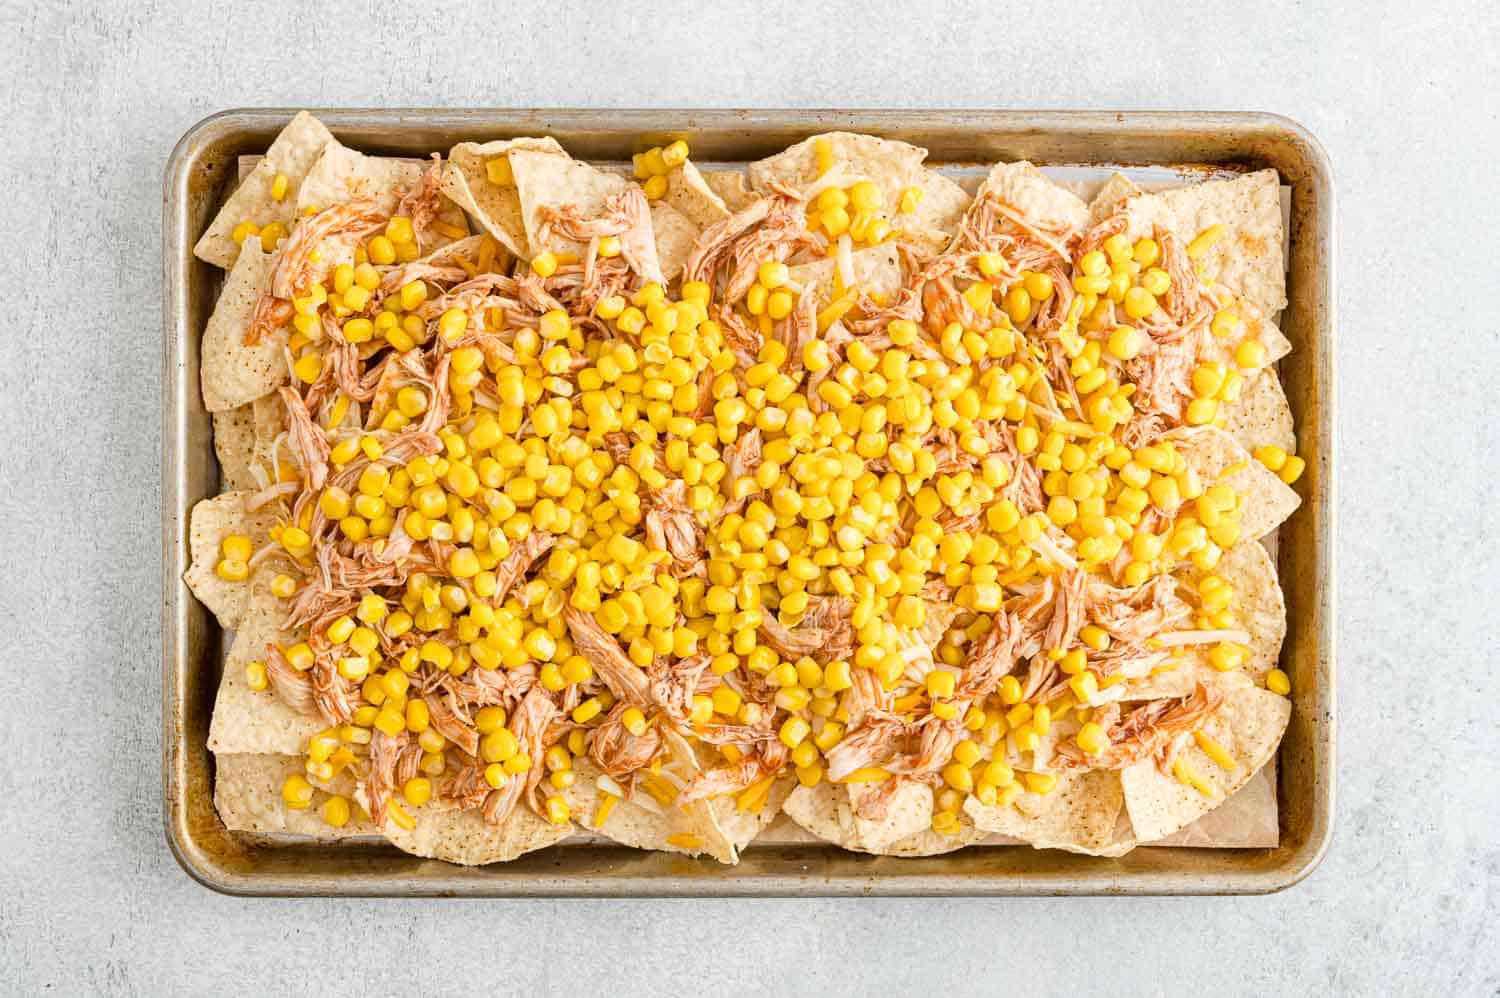 Corn added to nachos.